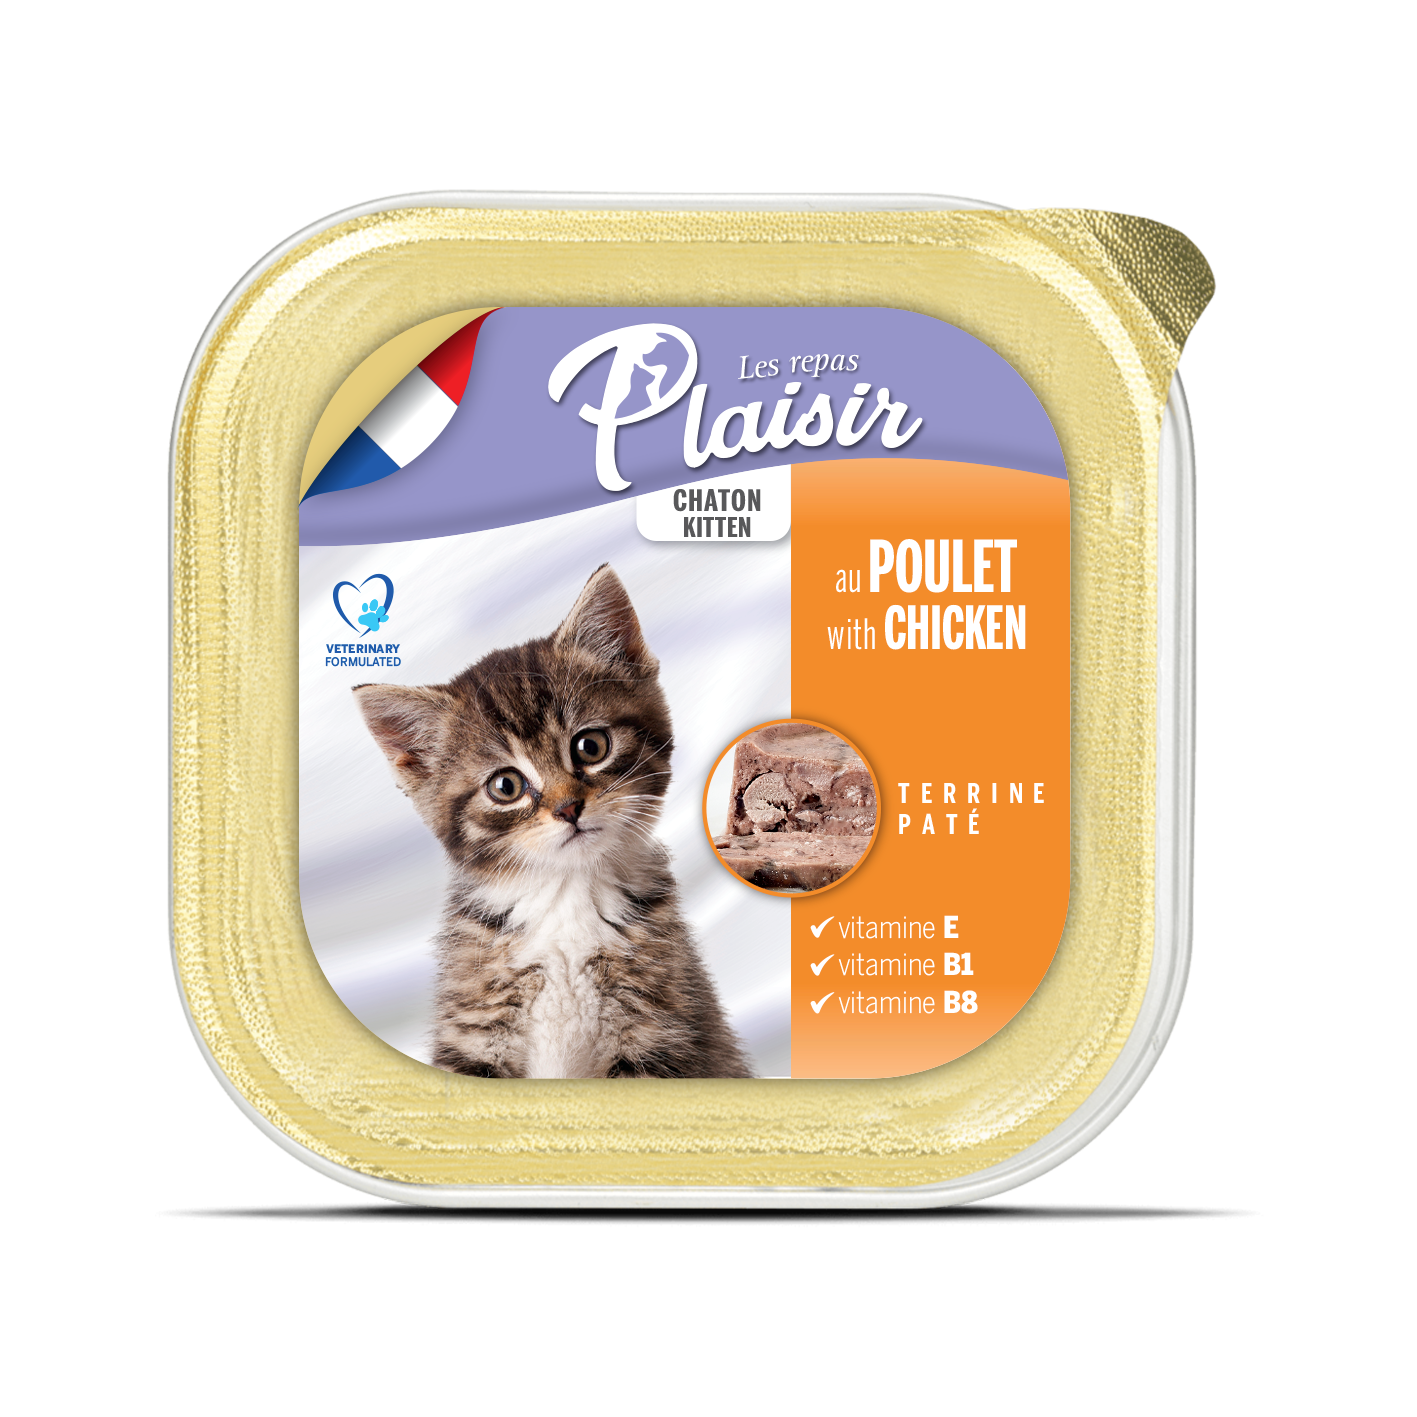  Plaisir Kitten Cat – Chicken Flavor Pate 